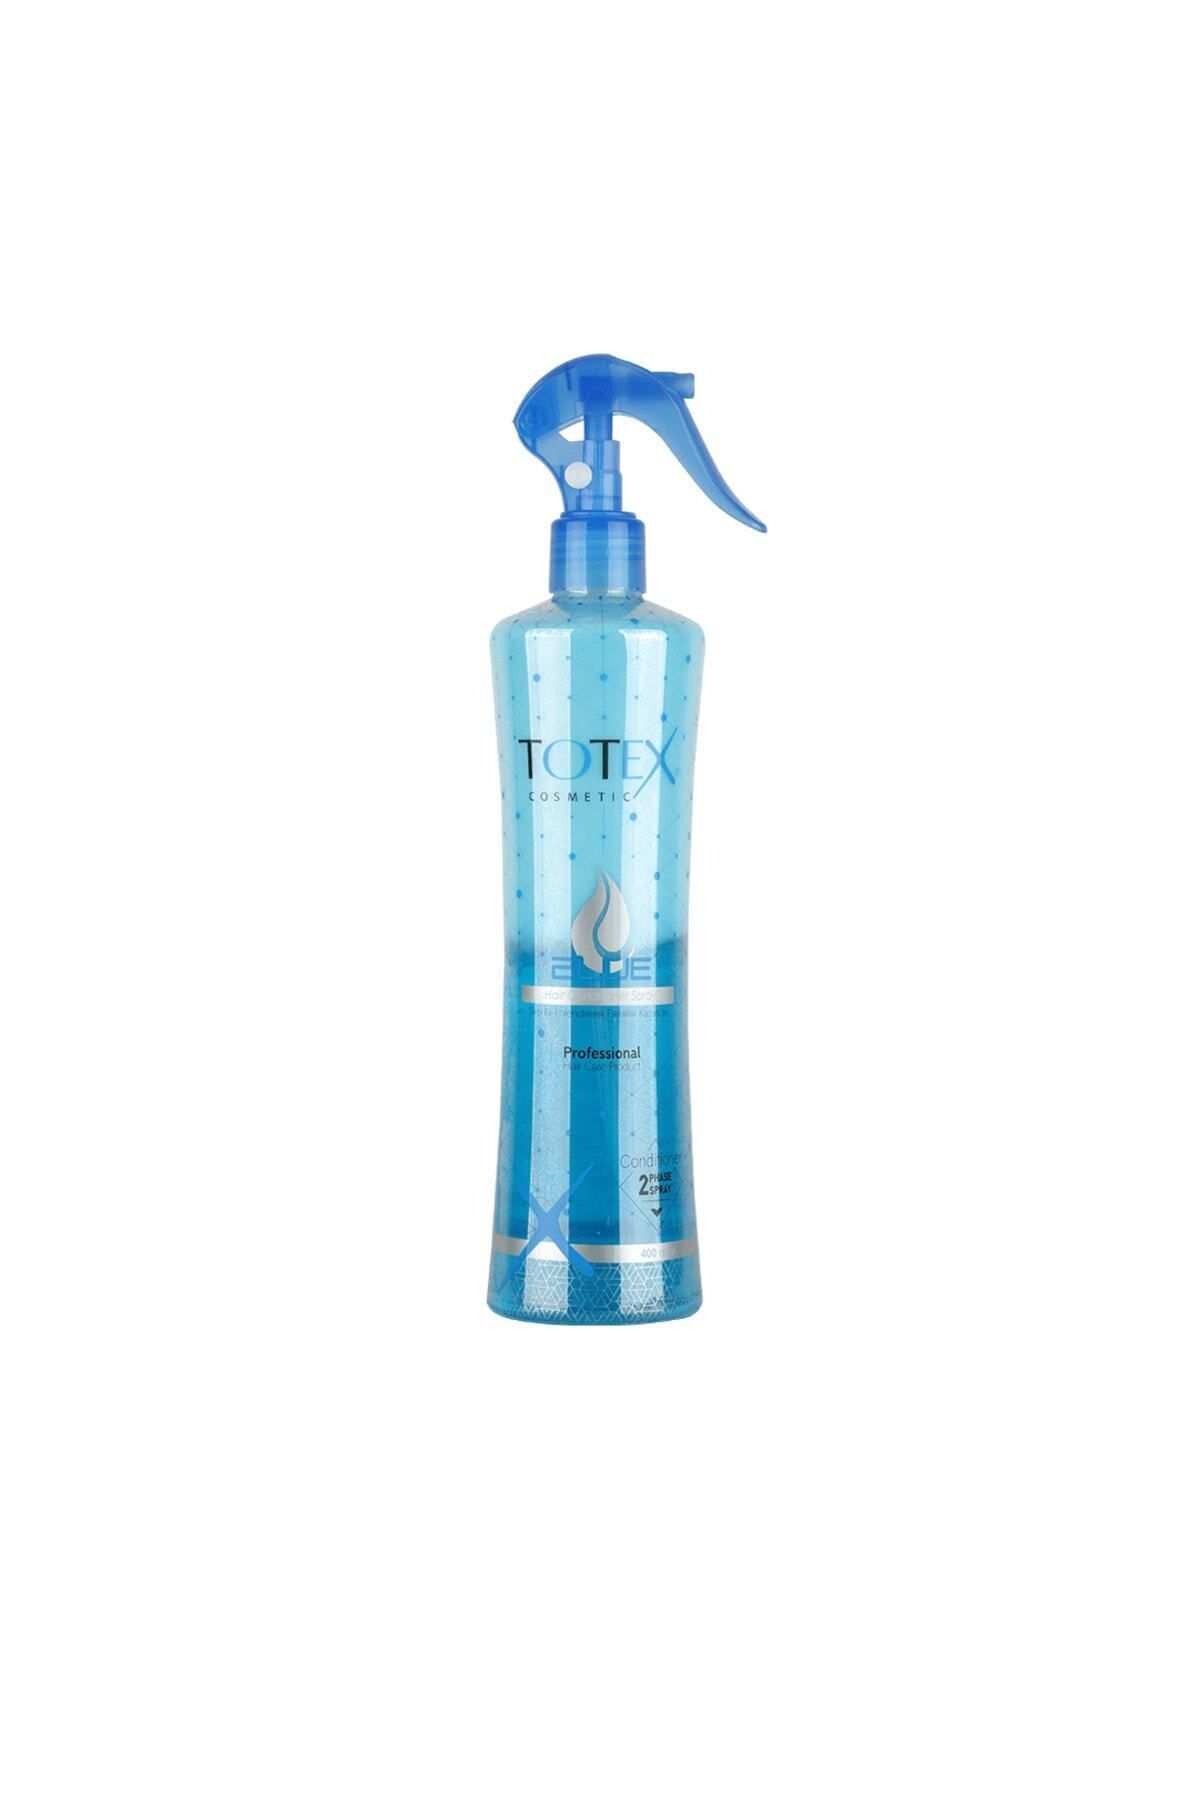 TOTEX 2 Aşamalı - Fazlı Saç Kondisyoneri | Koruyucu & Besleyici Fön Suyu | Mavi 400 ml